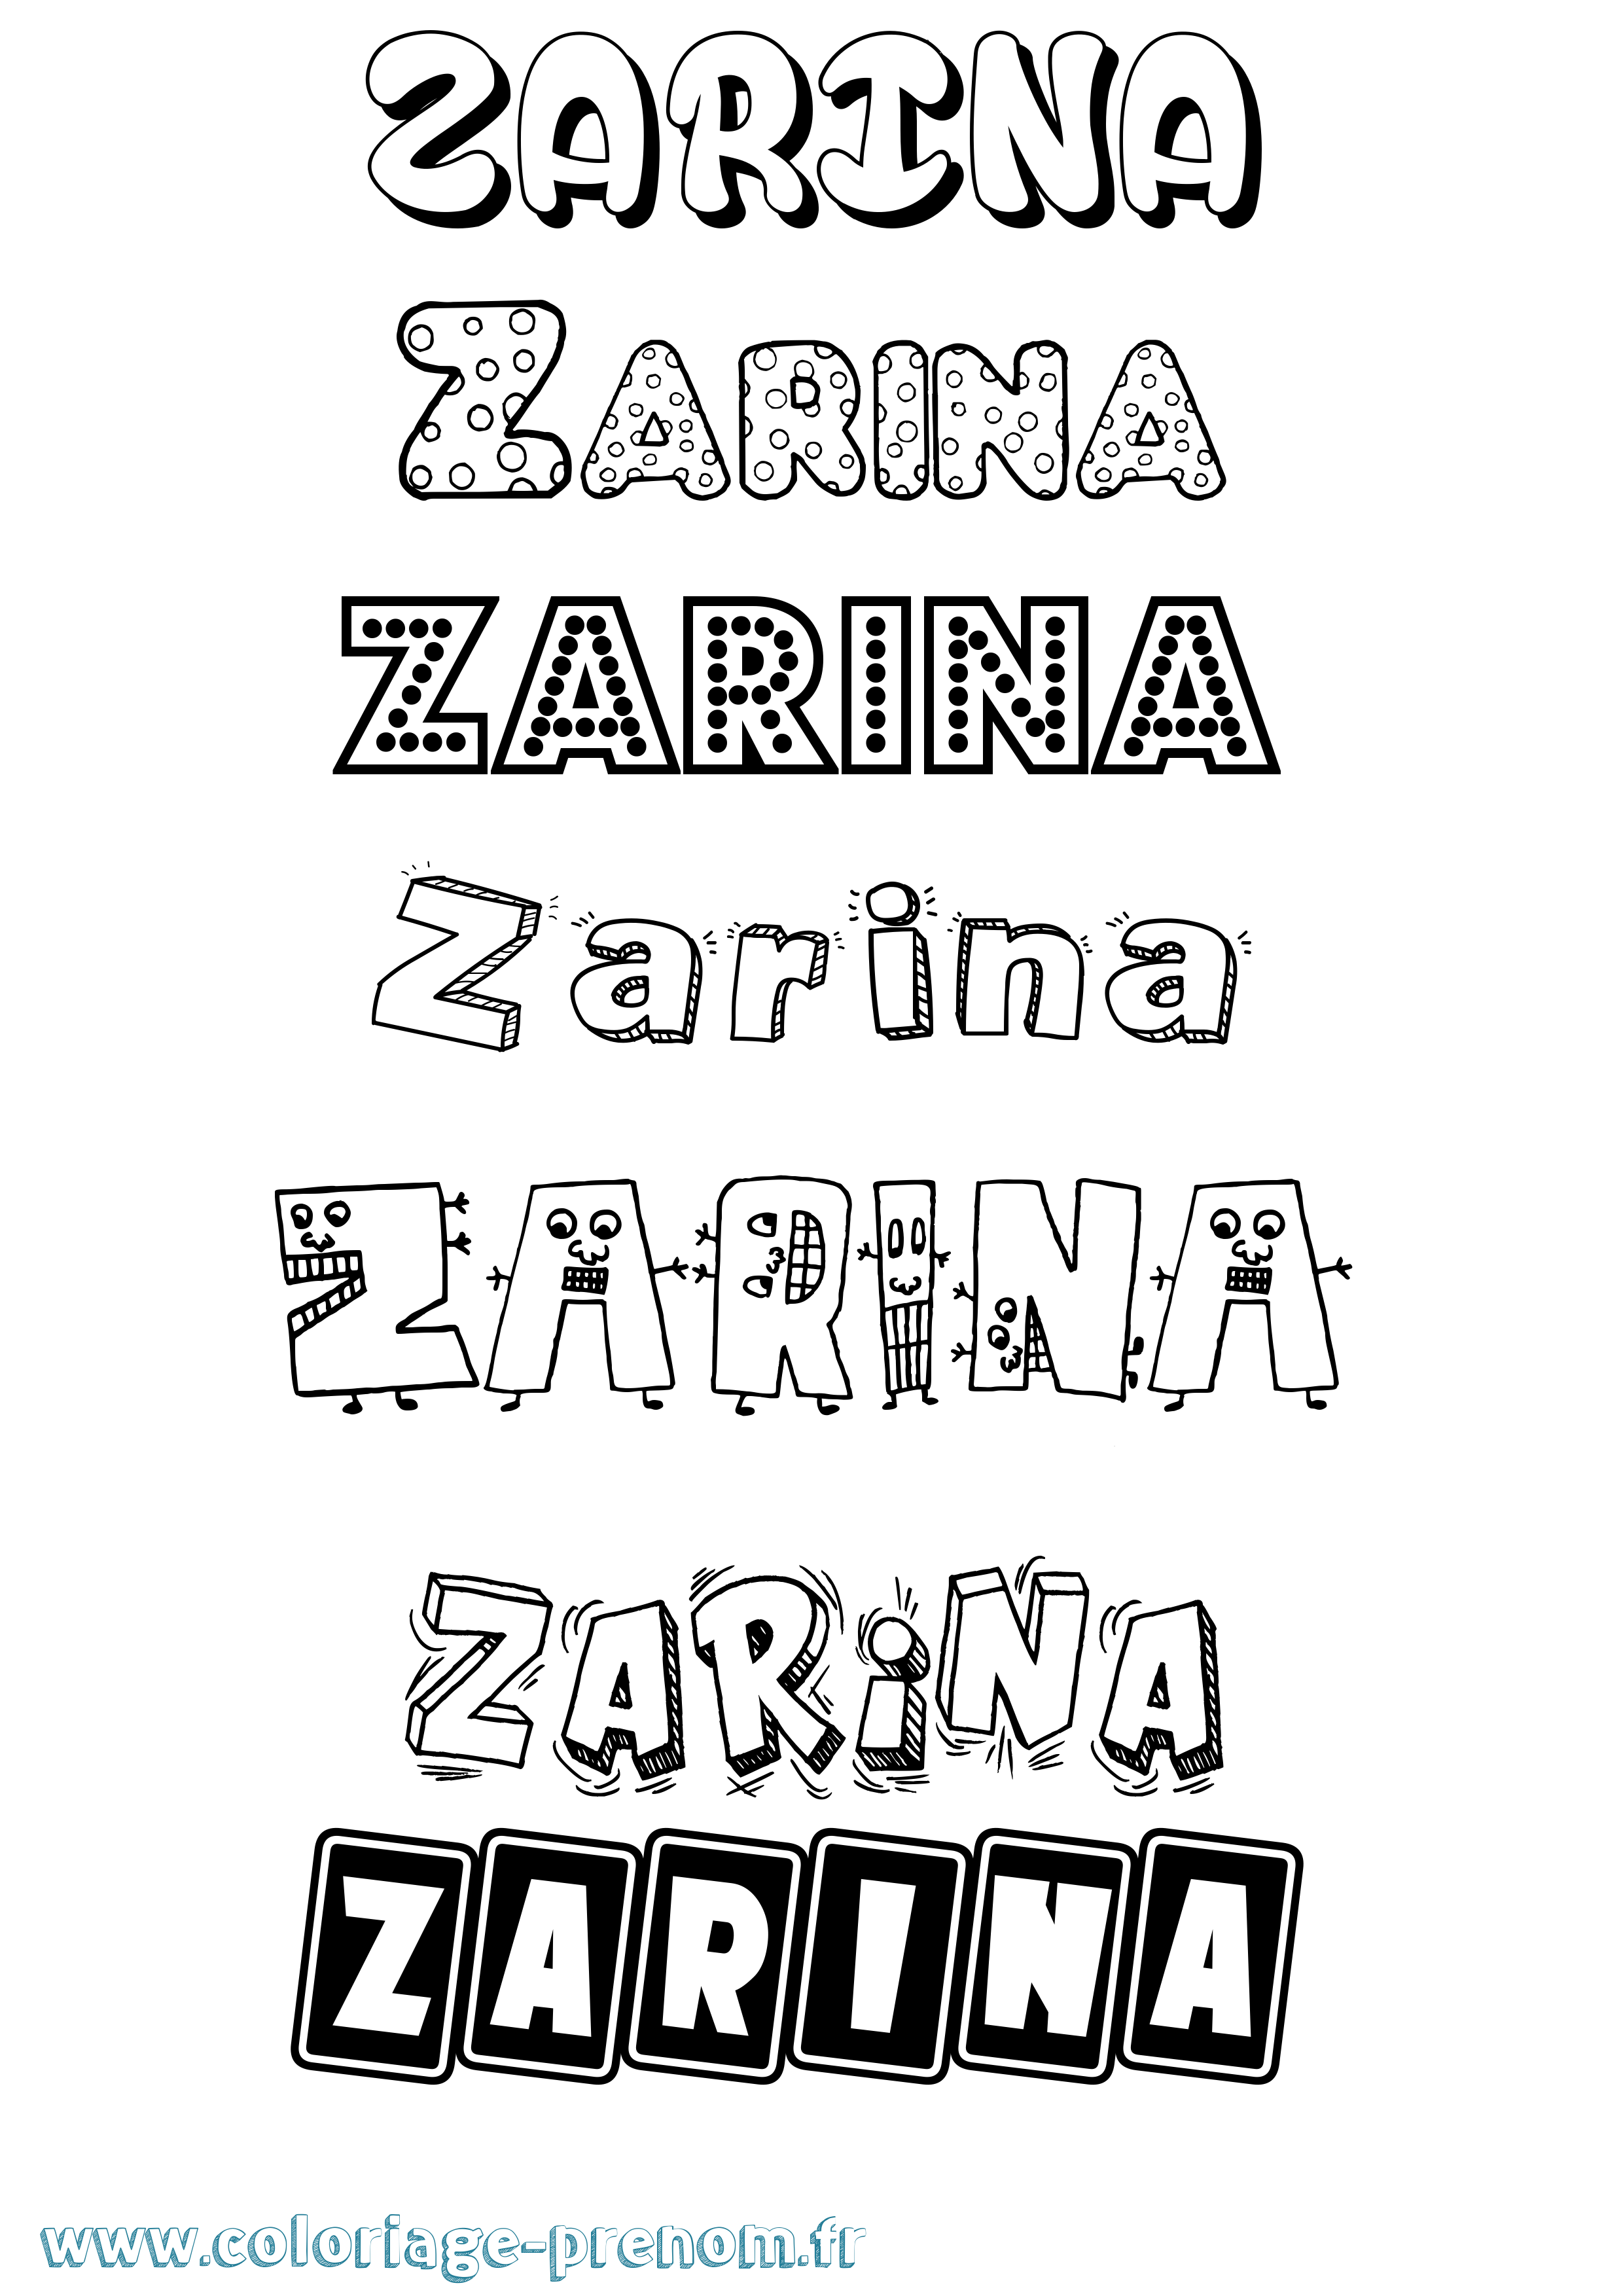 Coloriage prénom Zarina Fun